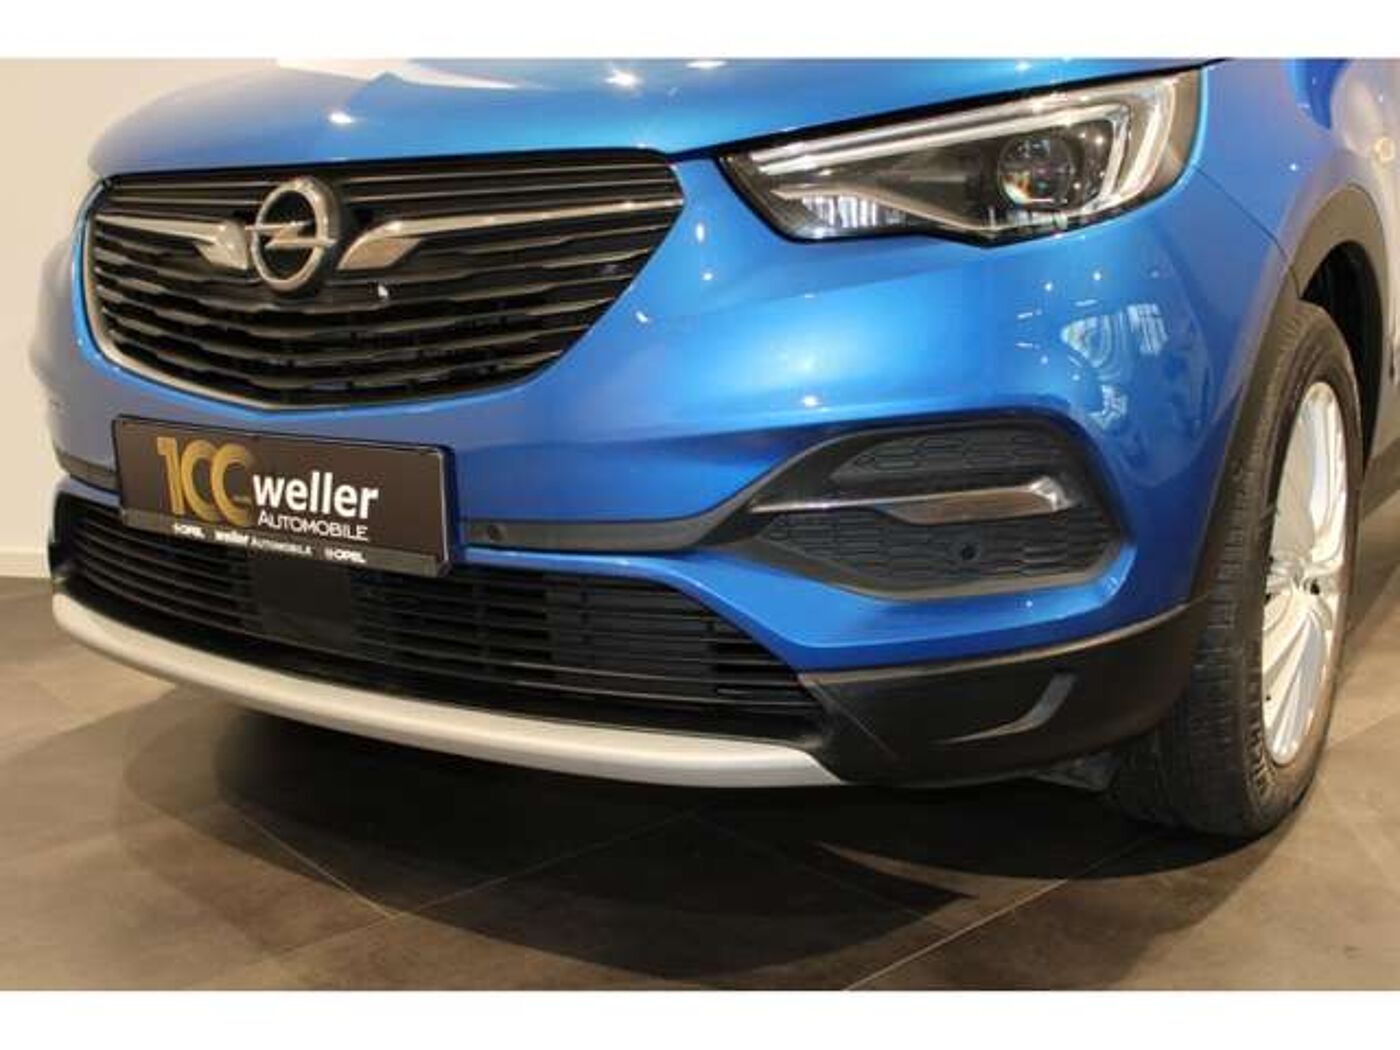 Opel  1.5D ''Innovation'' Rückfahrkamera LED Sitzheizung